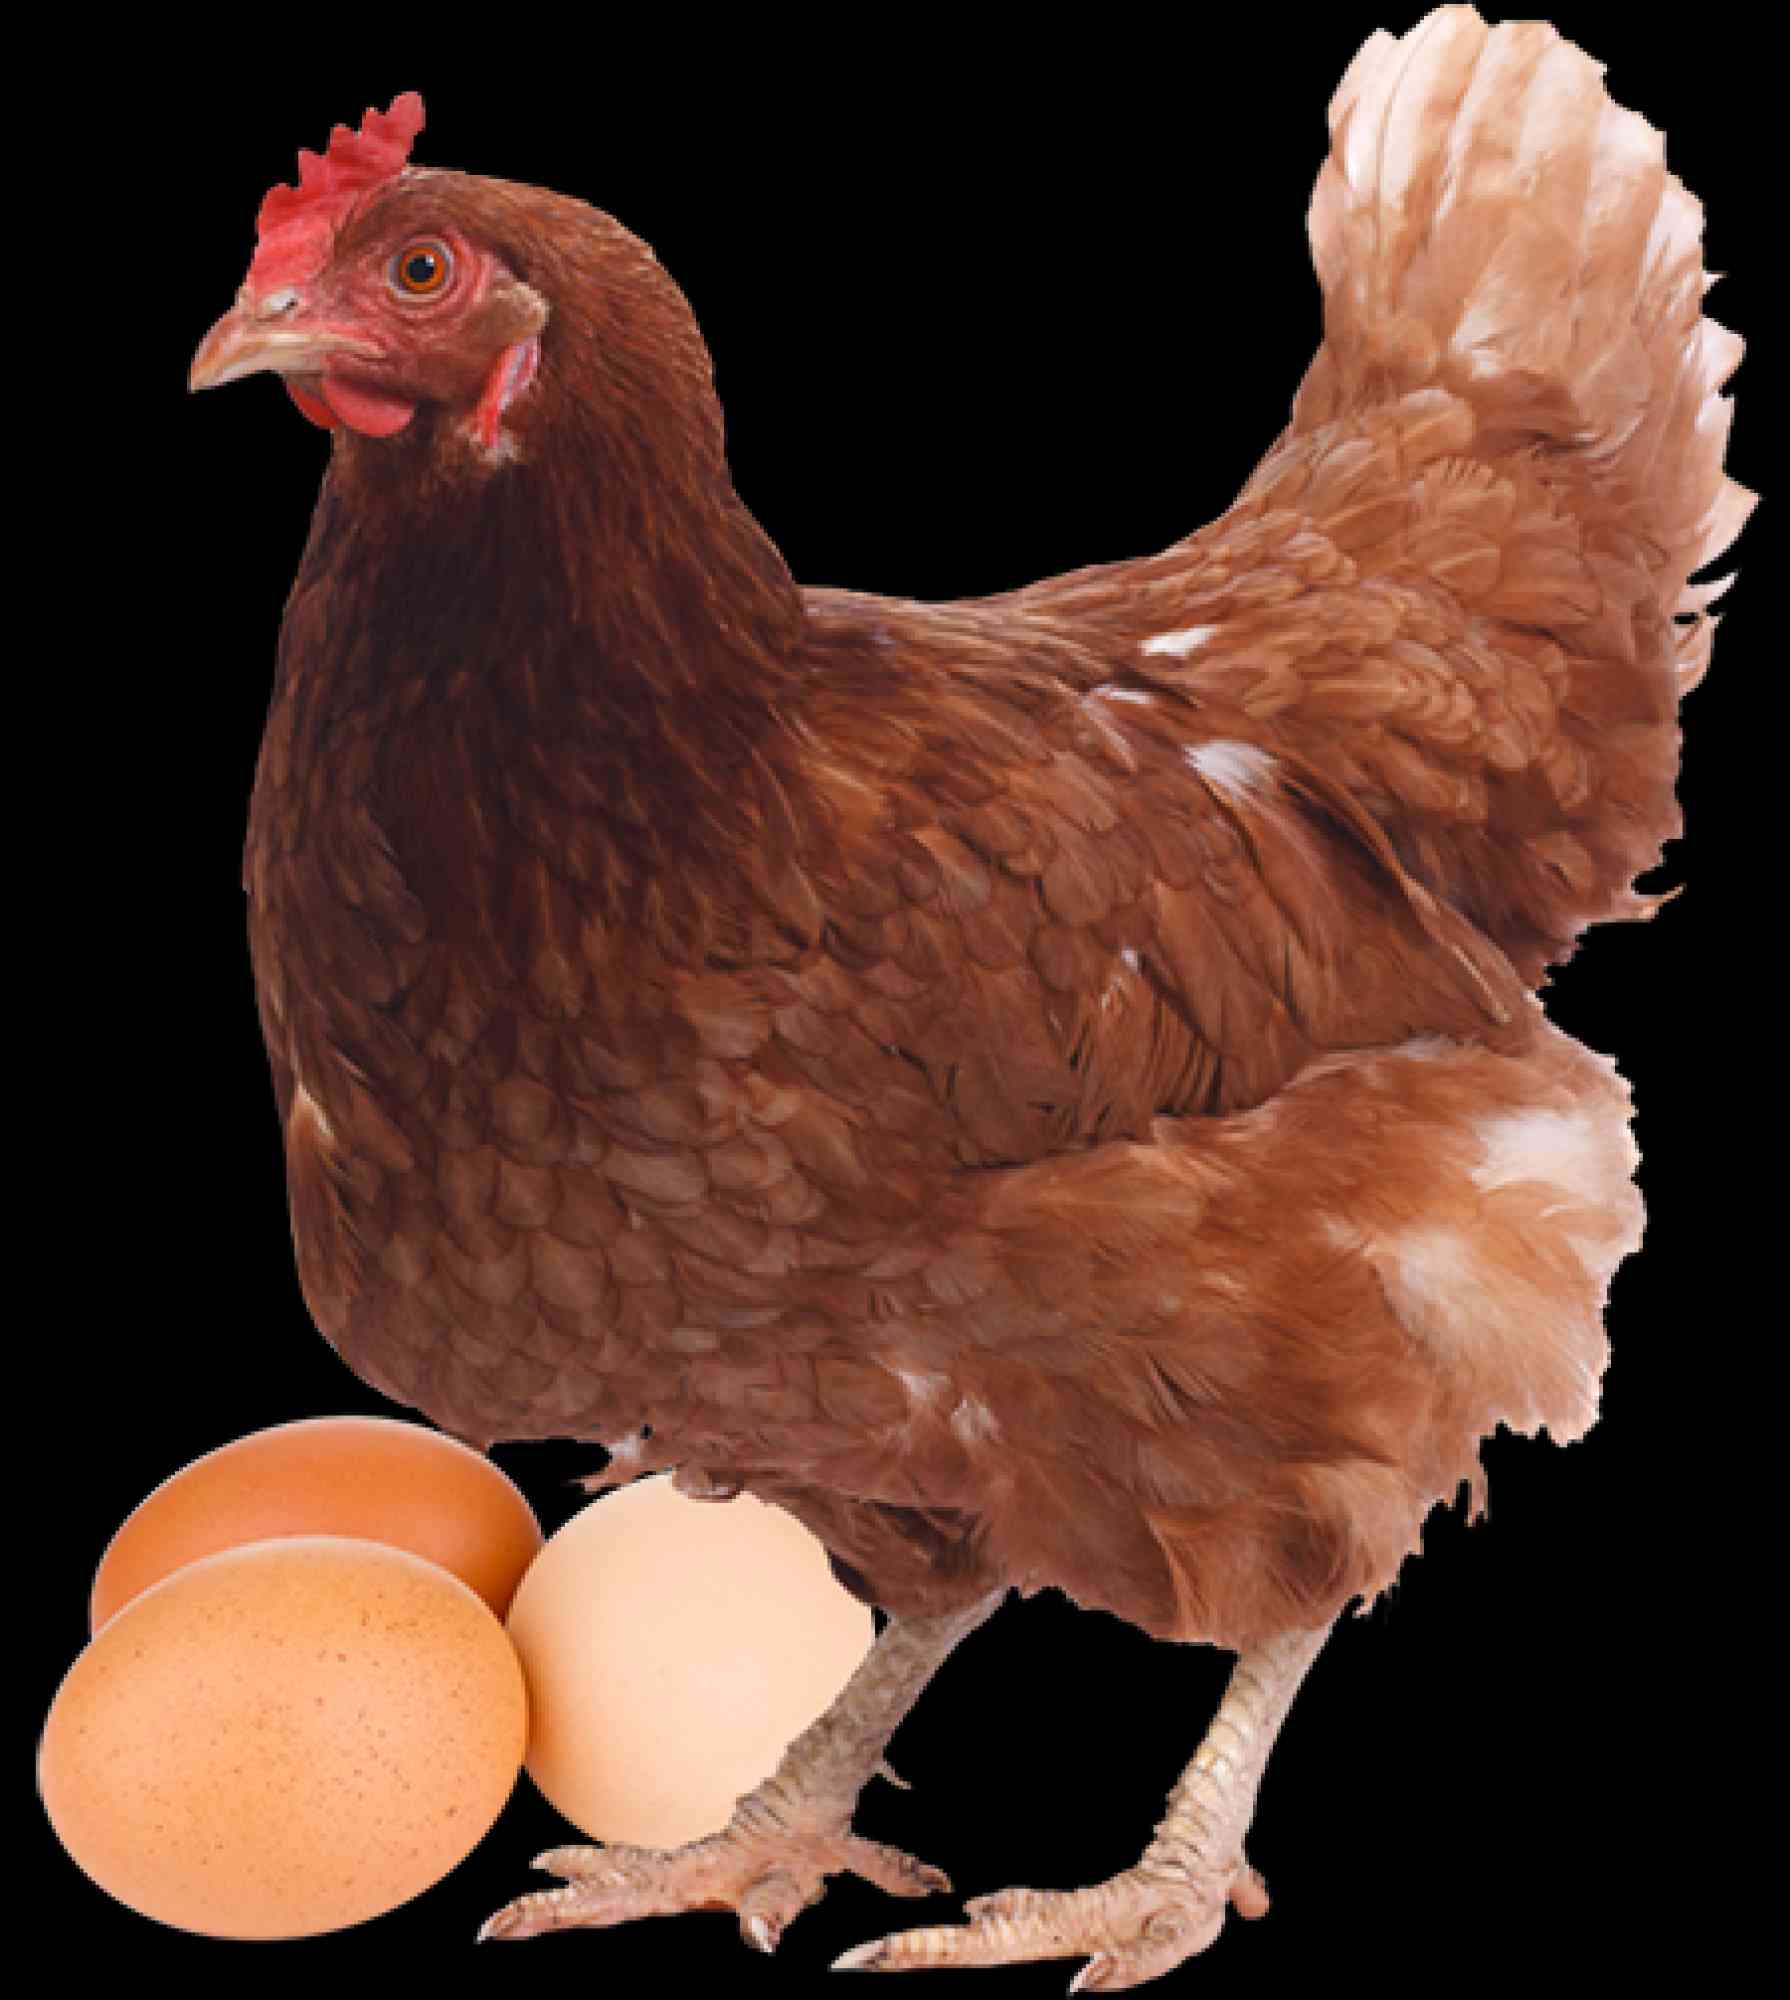 Anuncios de Industria y Agricultura - Anuncios Clasificados Gratis - Todoclasificados, Vendo gallinas ponedoras